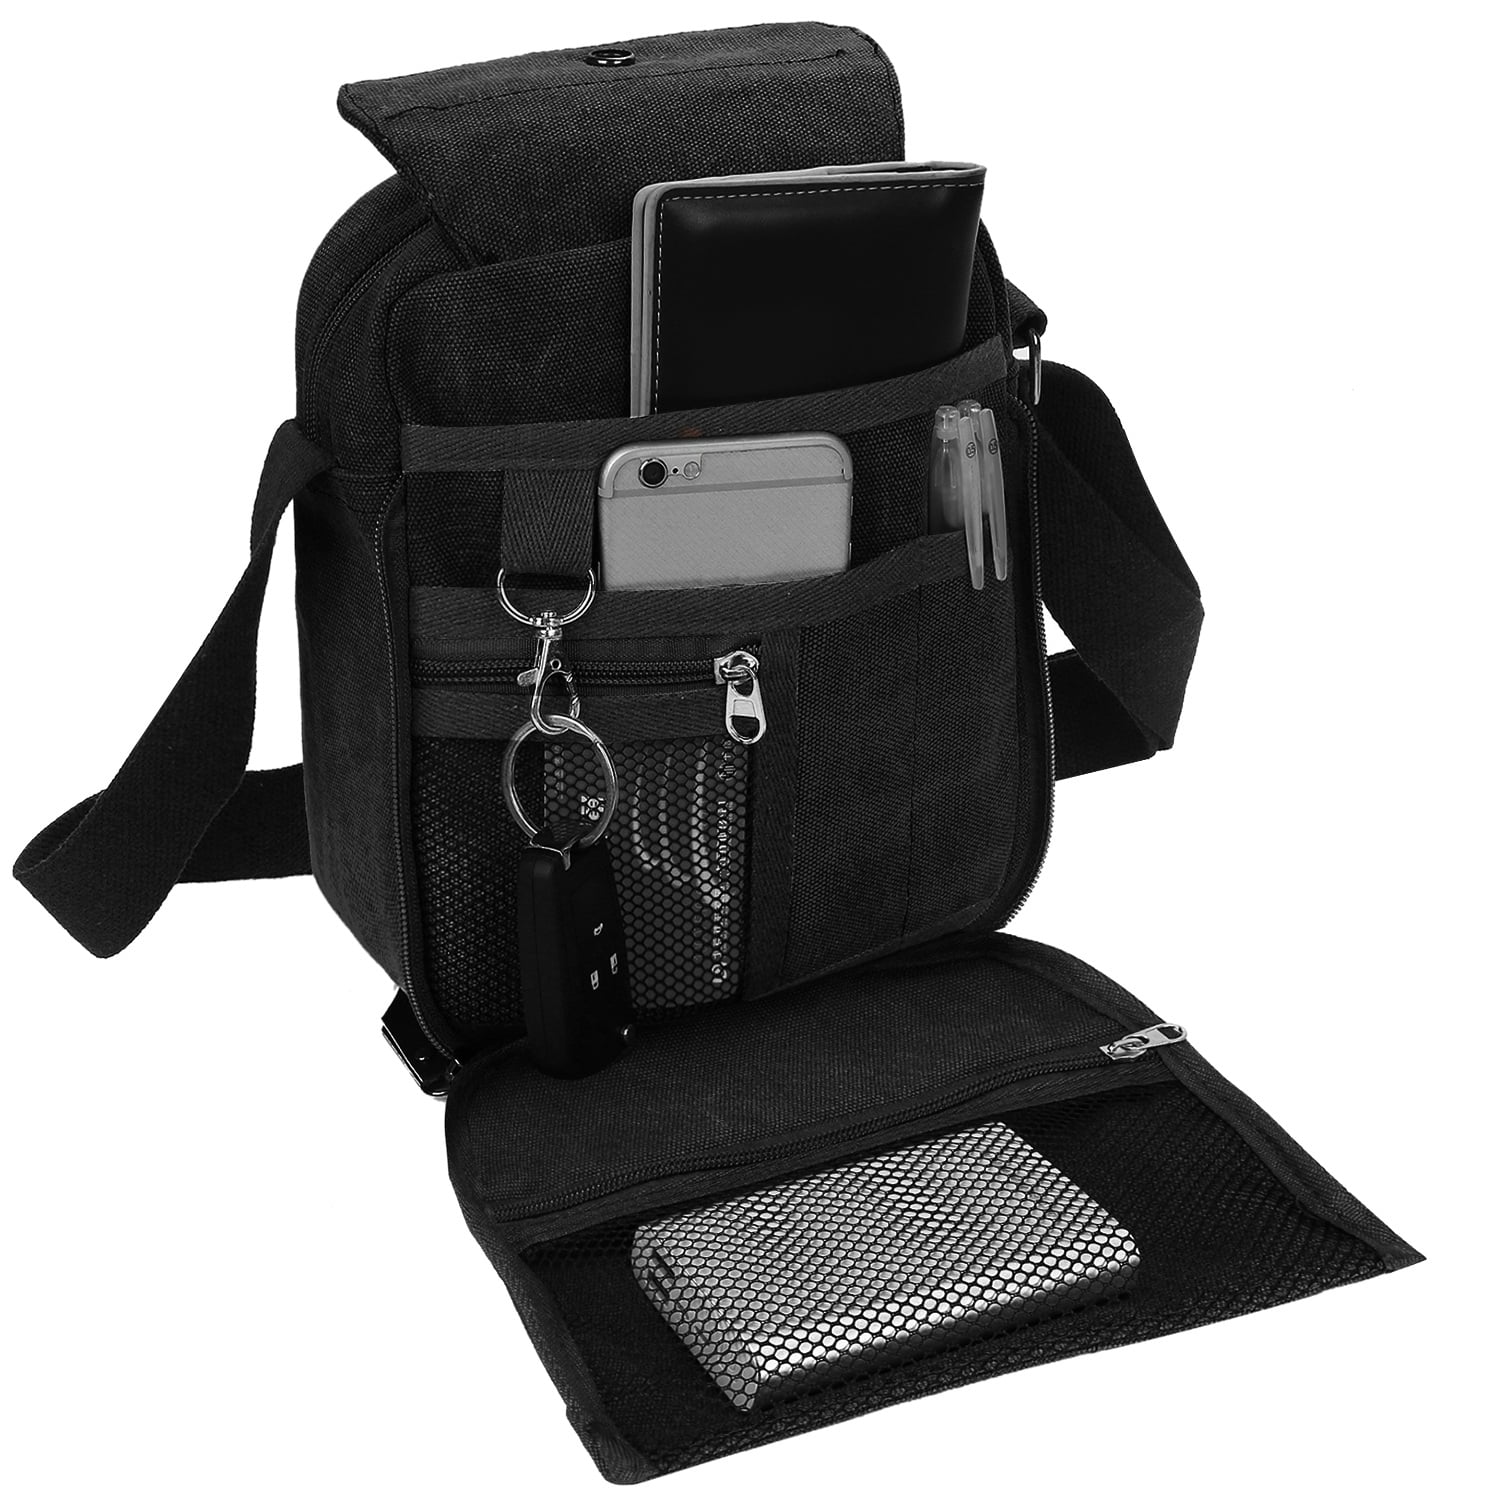 Miuline Men's Messenger Bag Waterproof Cross Body Shoulder Utility Travel Work Bag Black, Adult Unisex, Size: Large